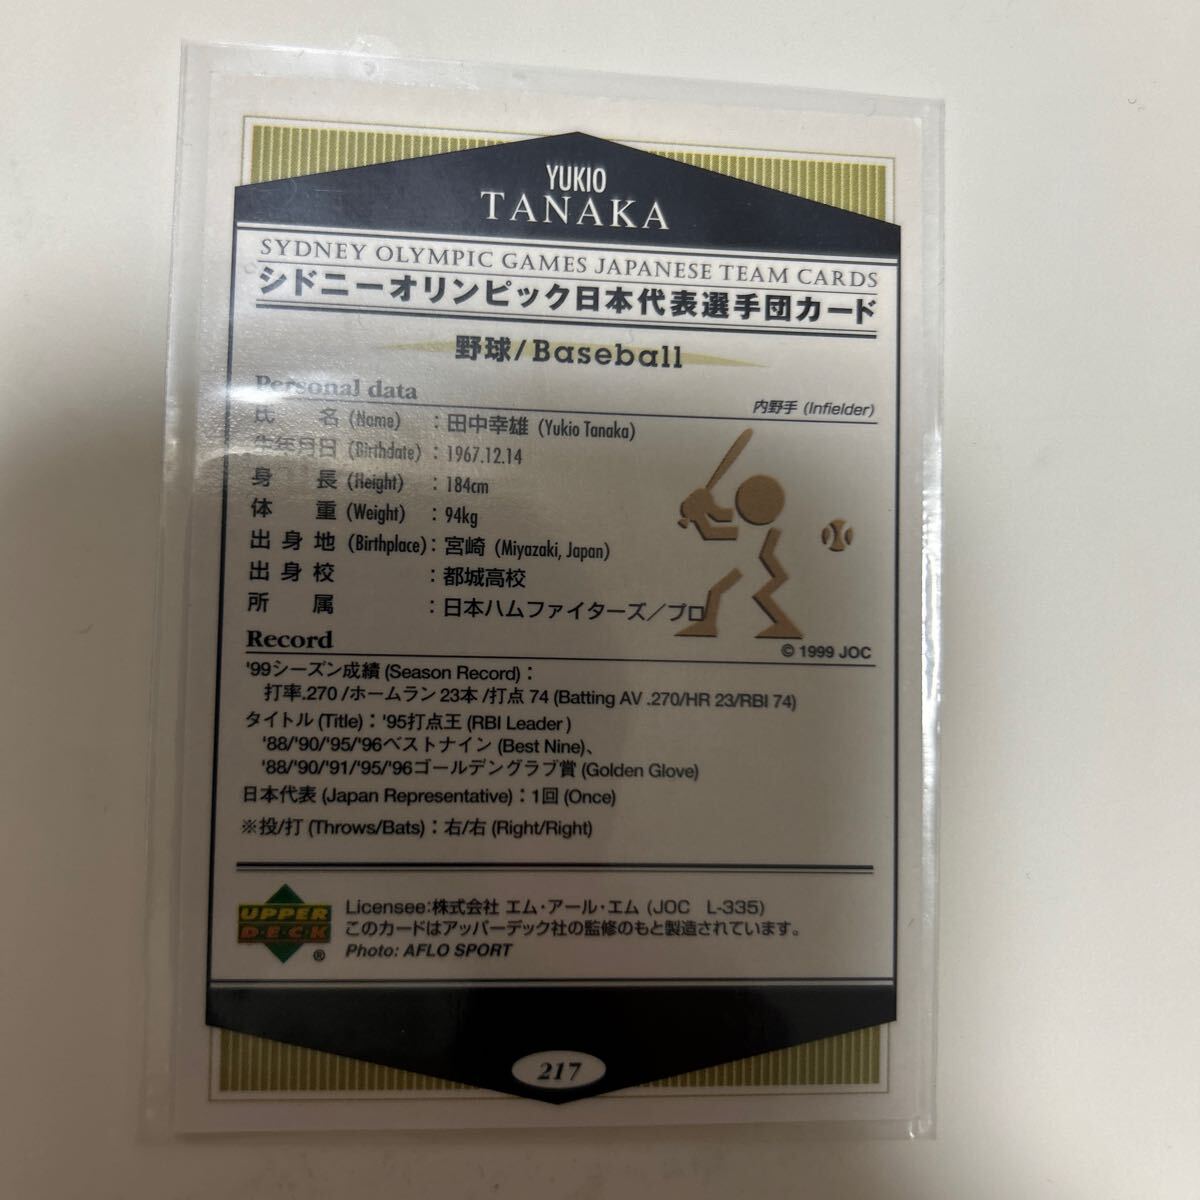 217田中幸雄 シドニーオリンピック日本代表選手団カードの画像2